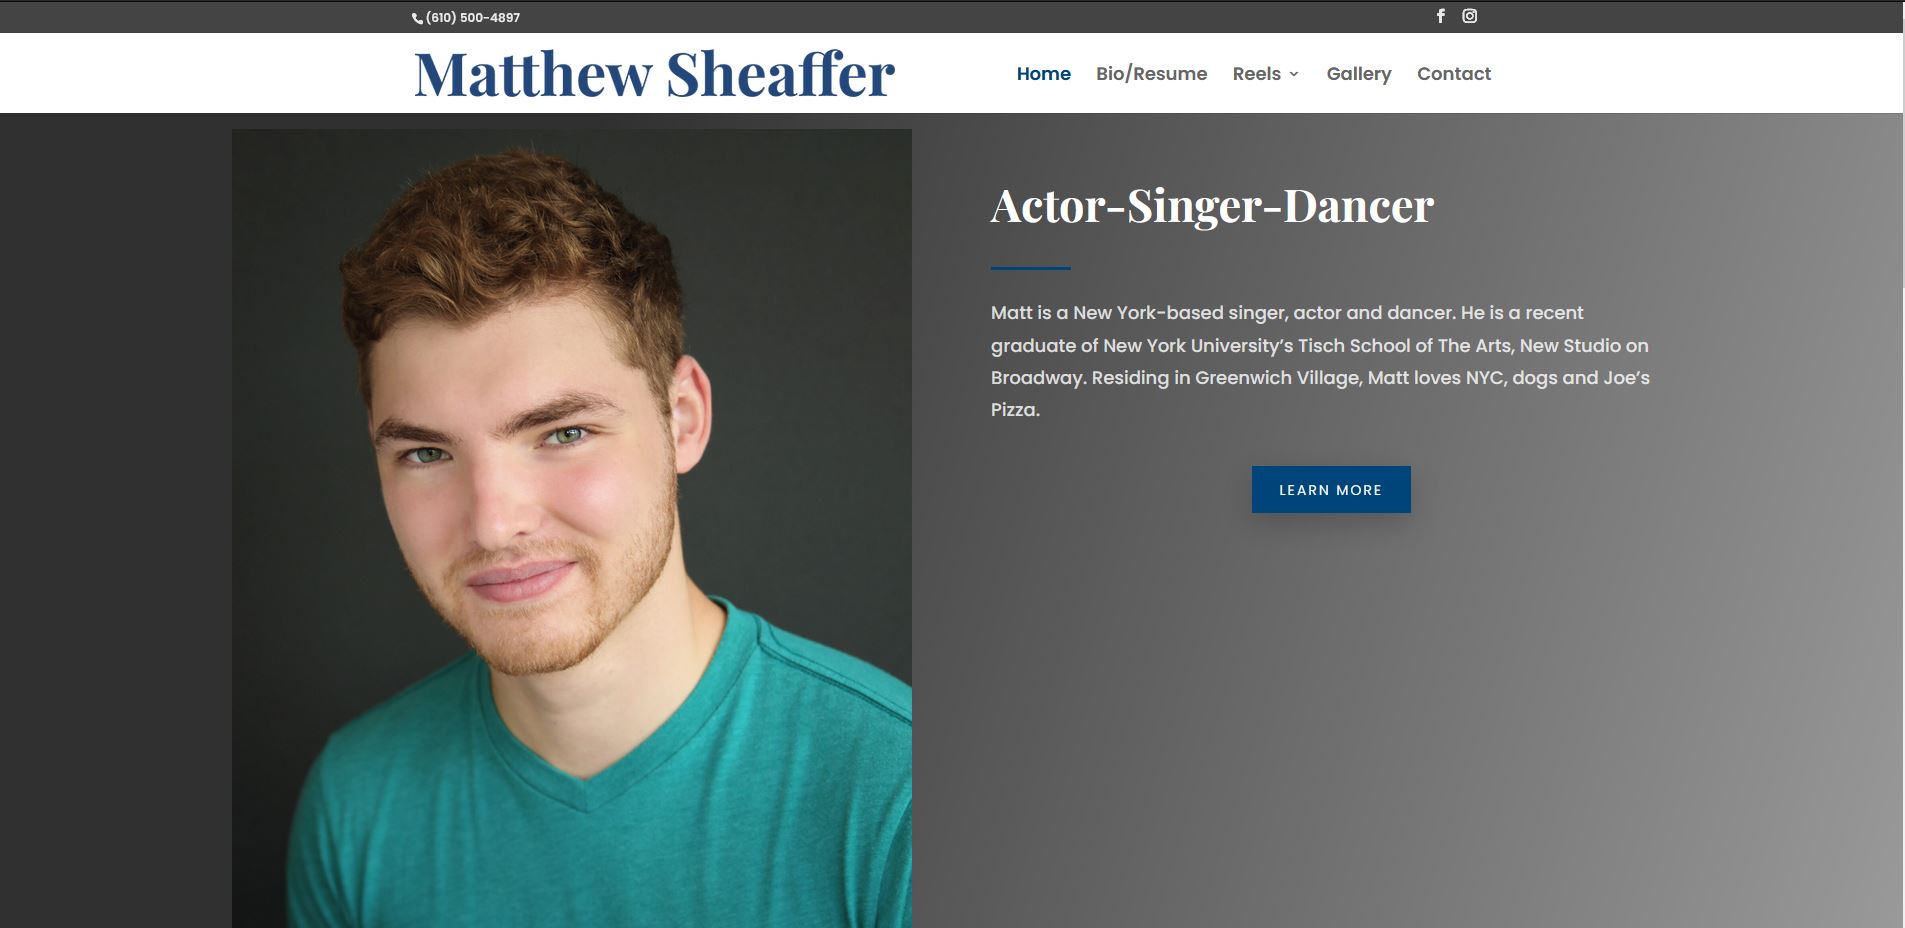 Matthew Sheaffer Website